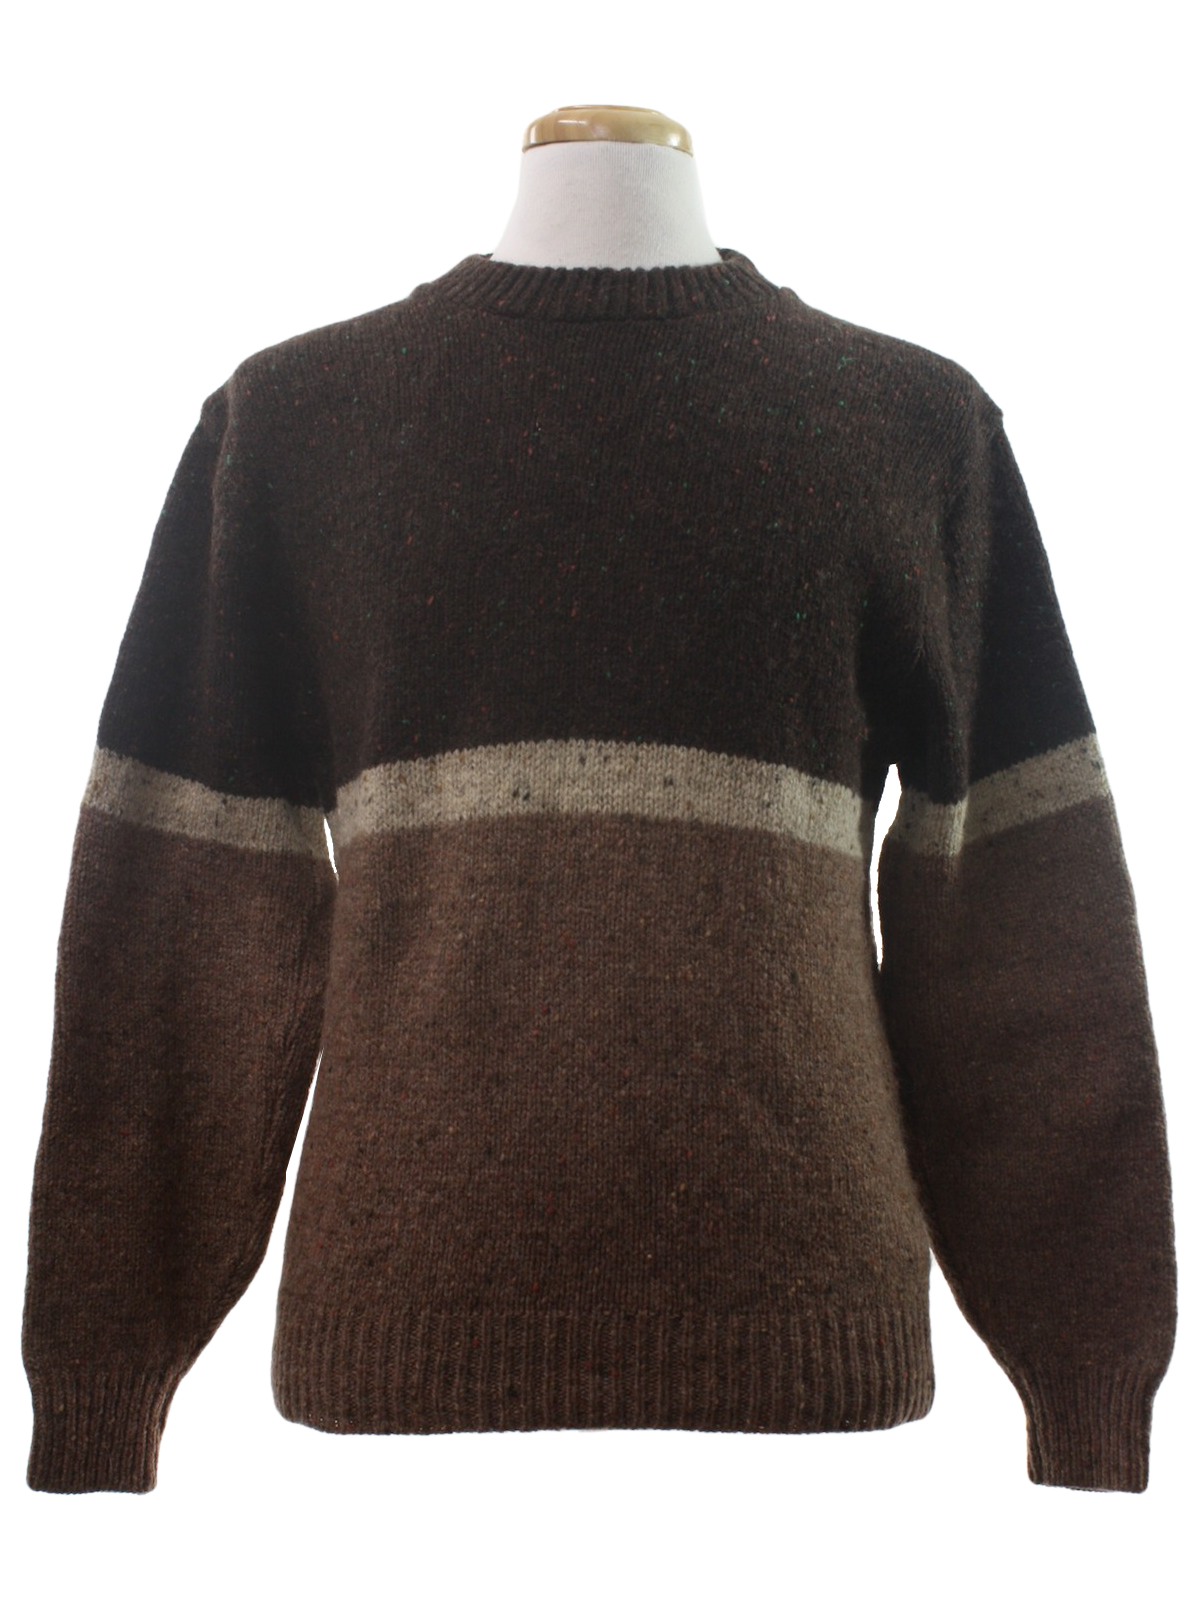 1960s Vintage Sweater: 60s -Pinnacle- Mens dark brown, tan and light ...